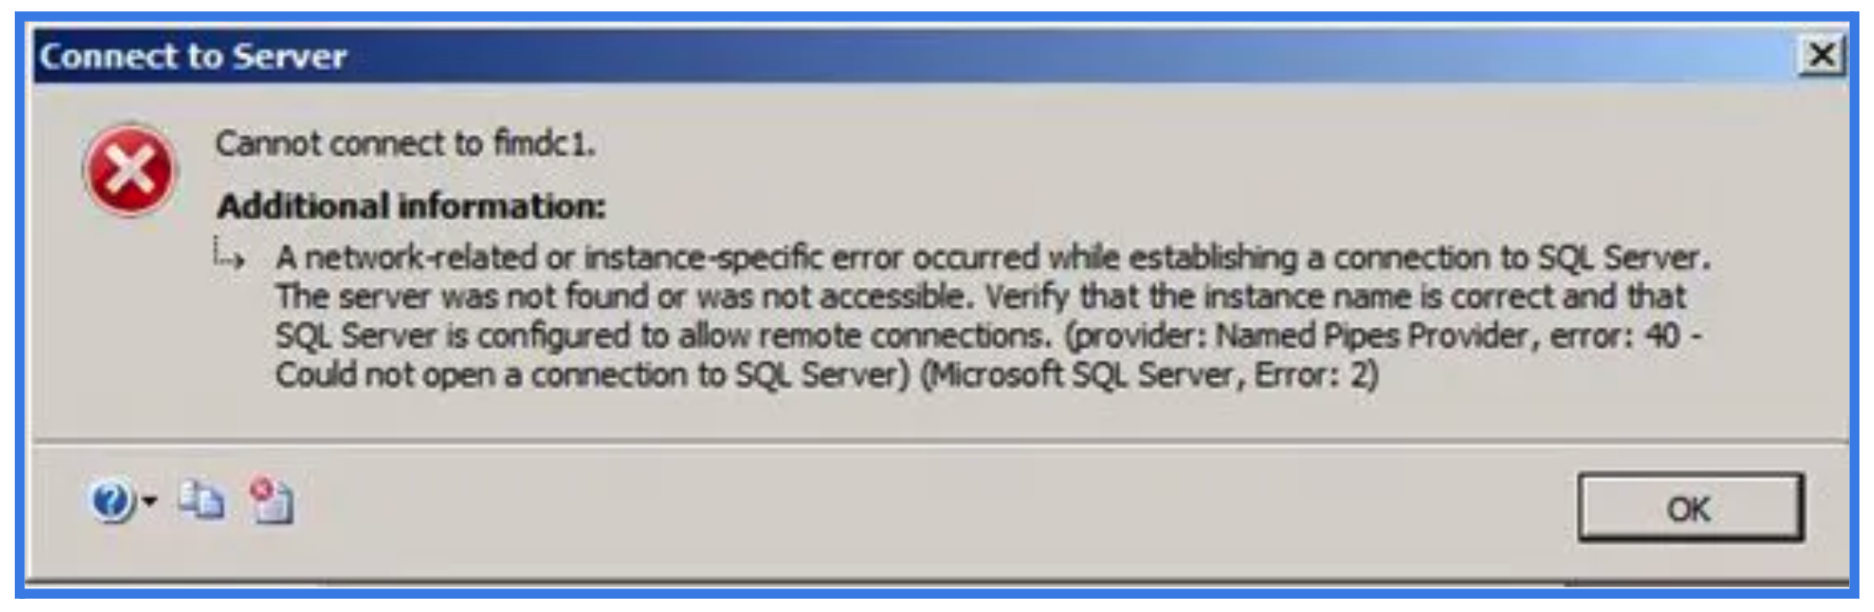 SQL Server Error 2 Message